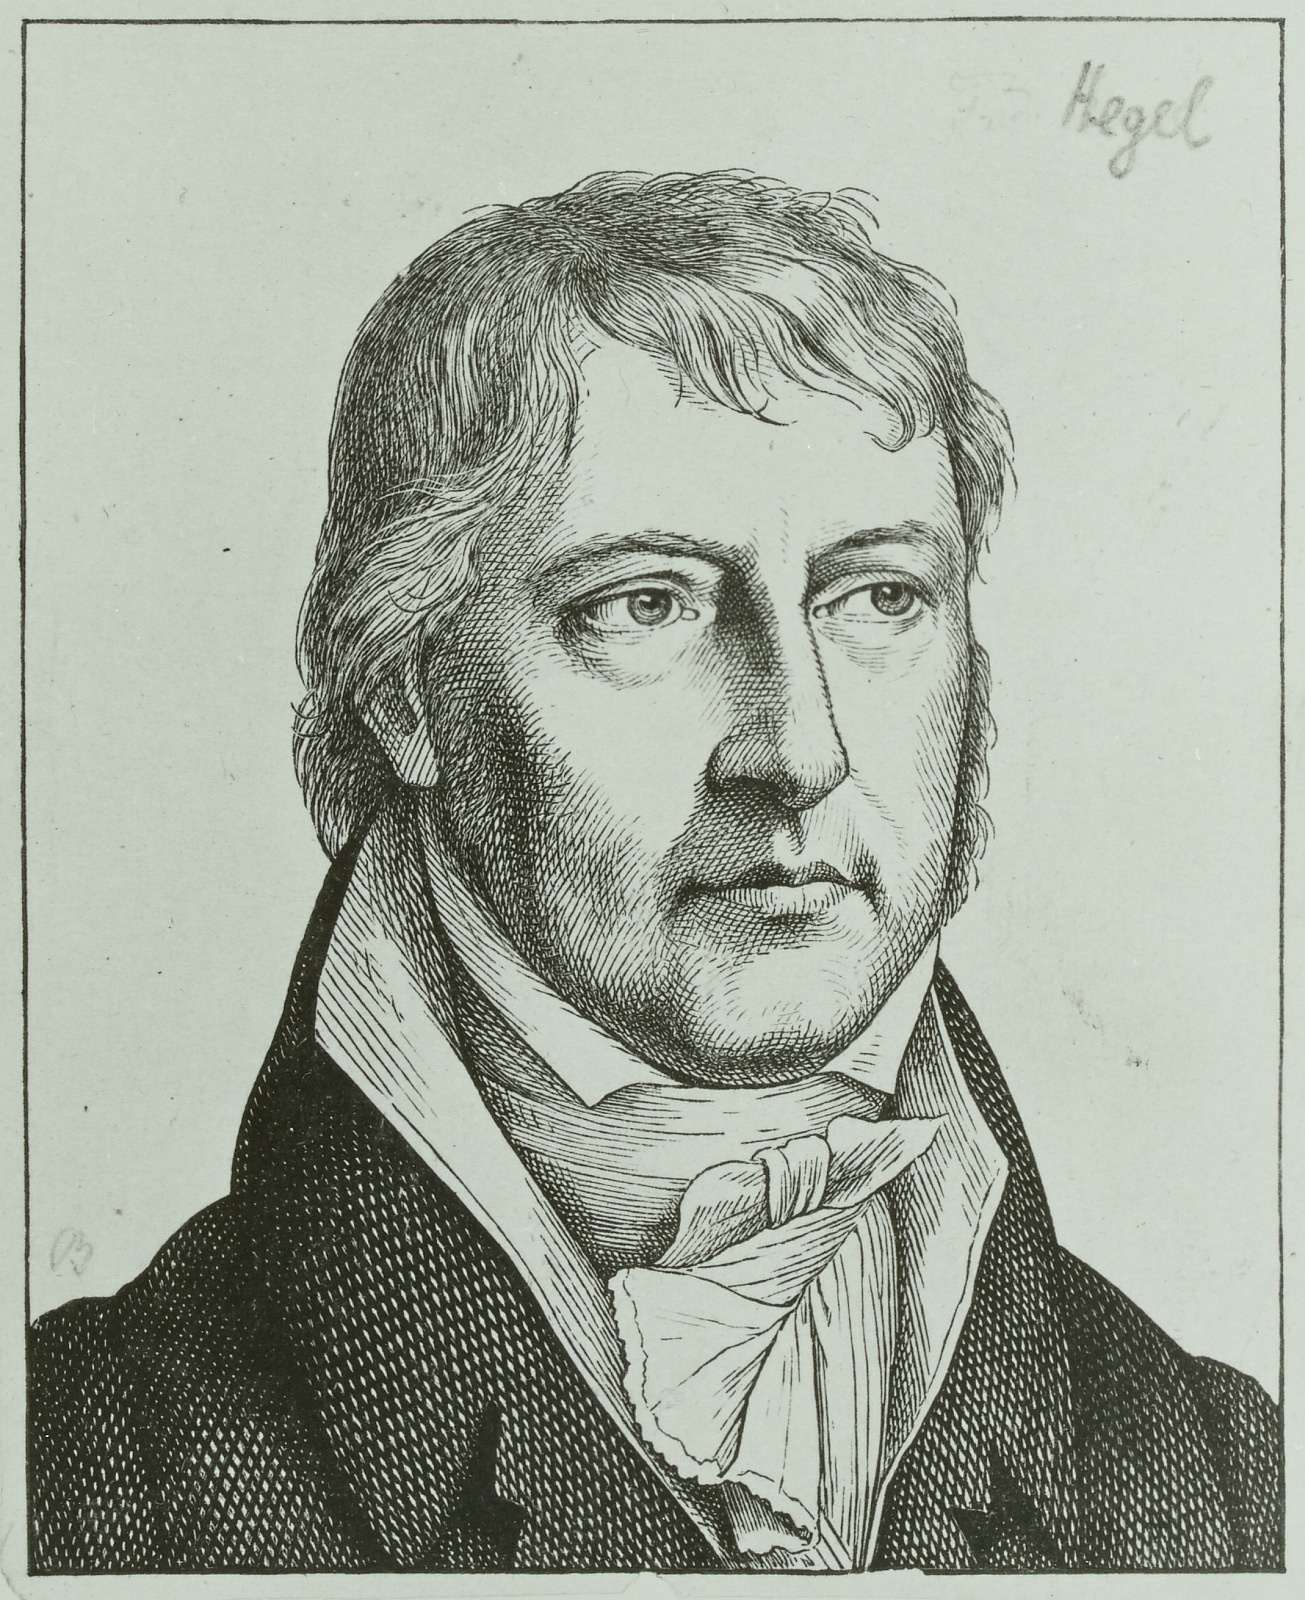 Hegel by Bürkner.jpg. 